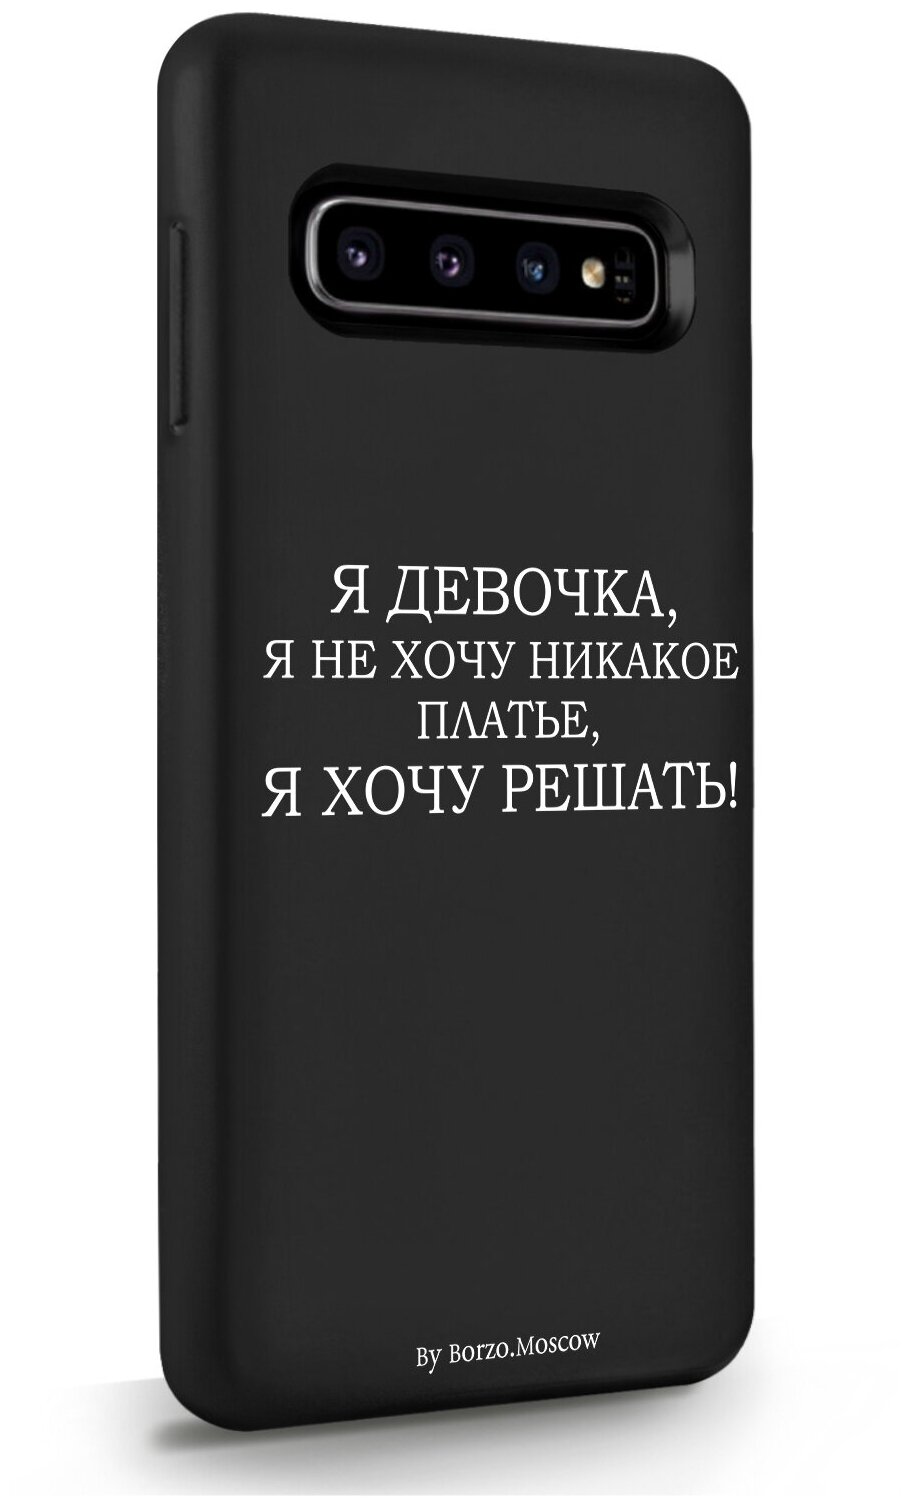 Черный силиконовый чехол Borzo.Moscow для Samsung Galaxy S10 Я девочка, я хочу решать для Самсунг Галакси С10